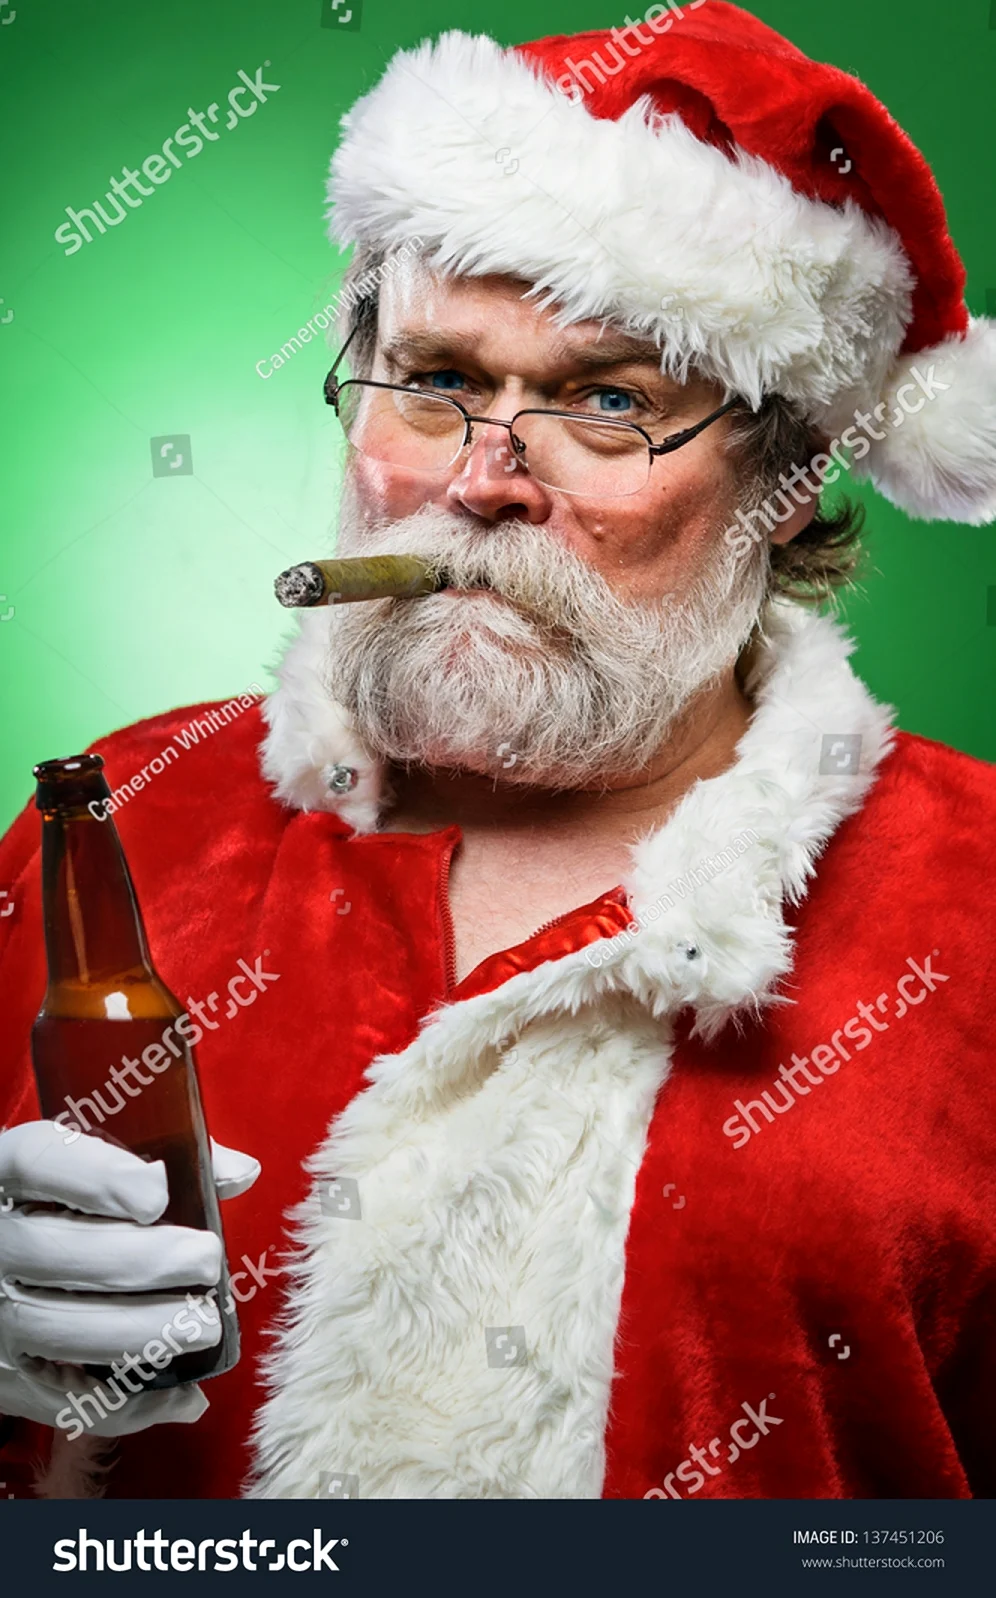 Санта Клаус с сигарой. Прикольная картинка